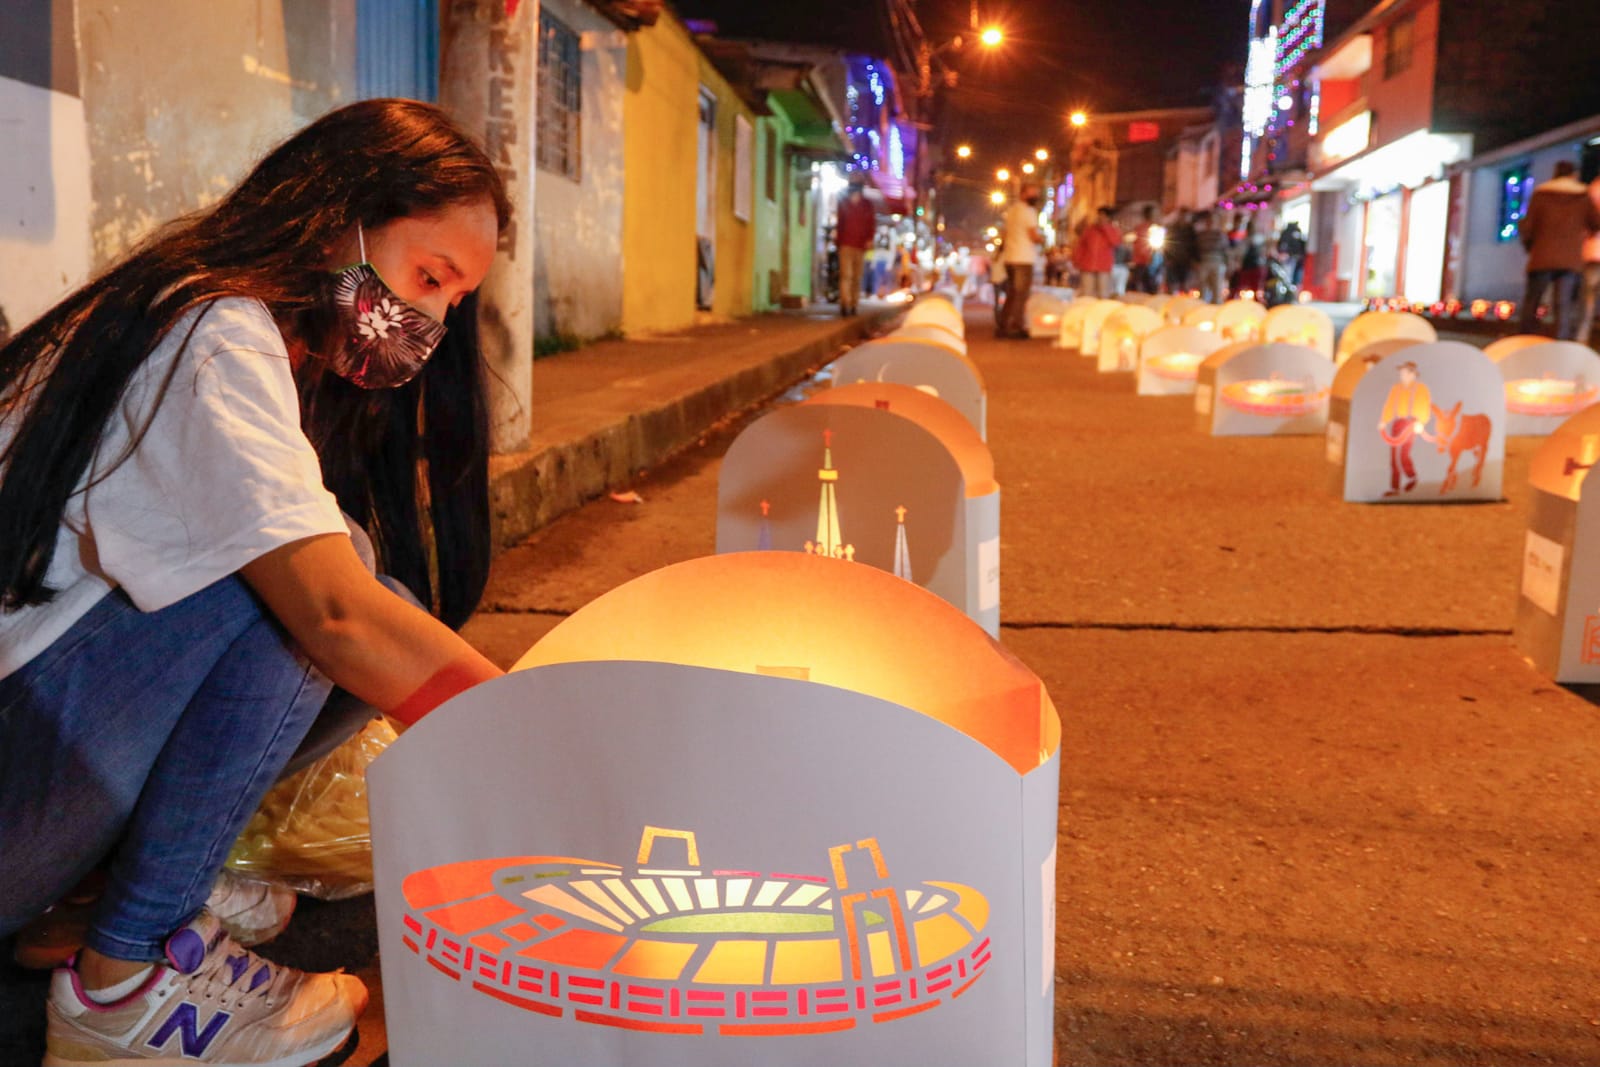 Noche de Velitas en Manizales: ¿Qué recomiendan las autoridades?